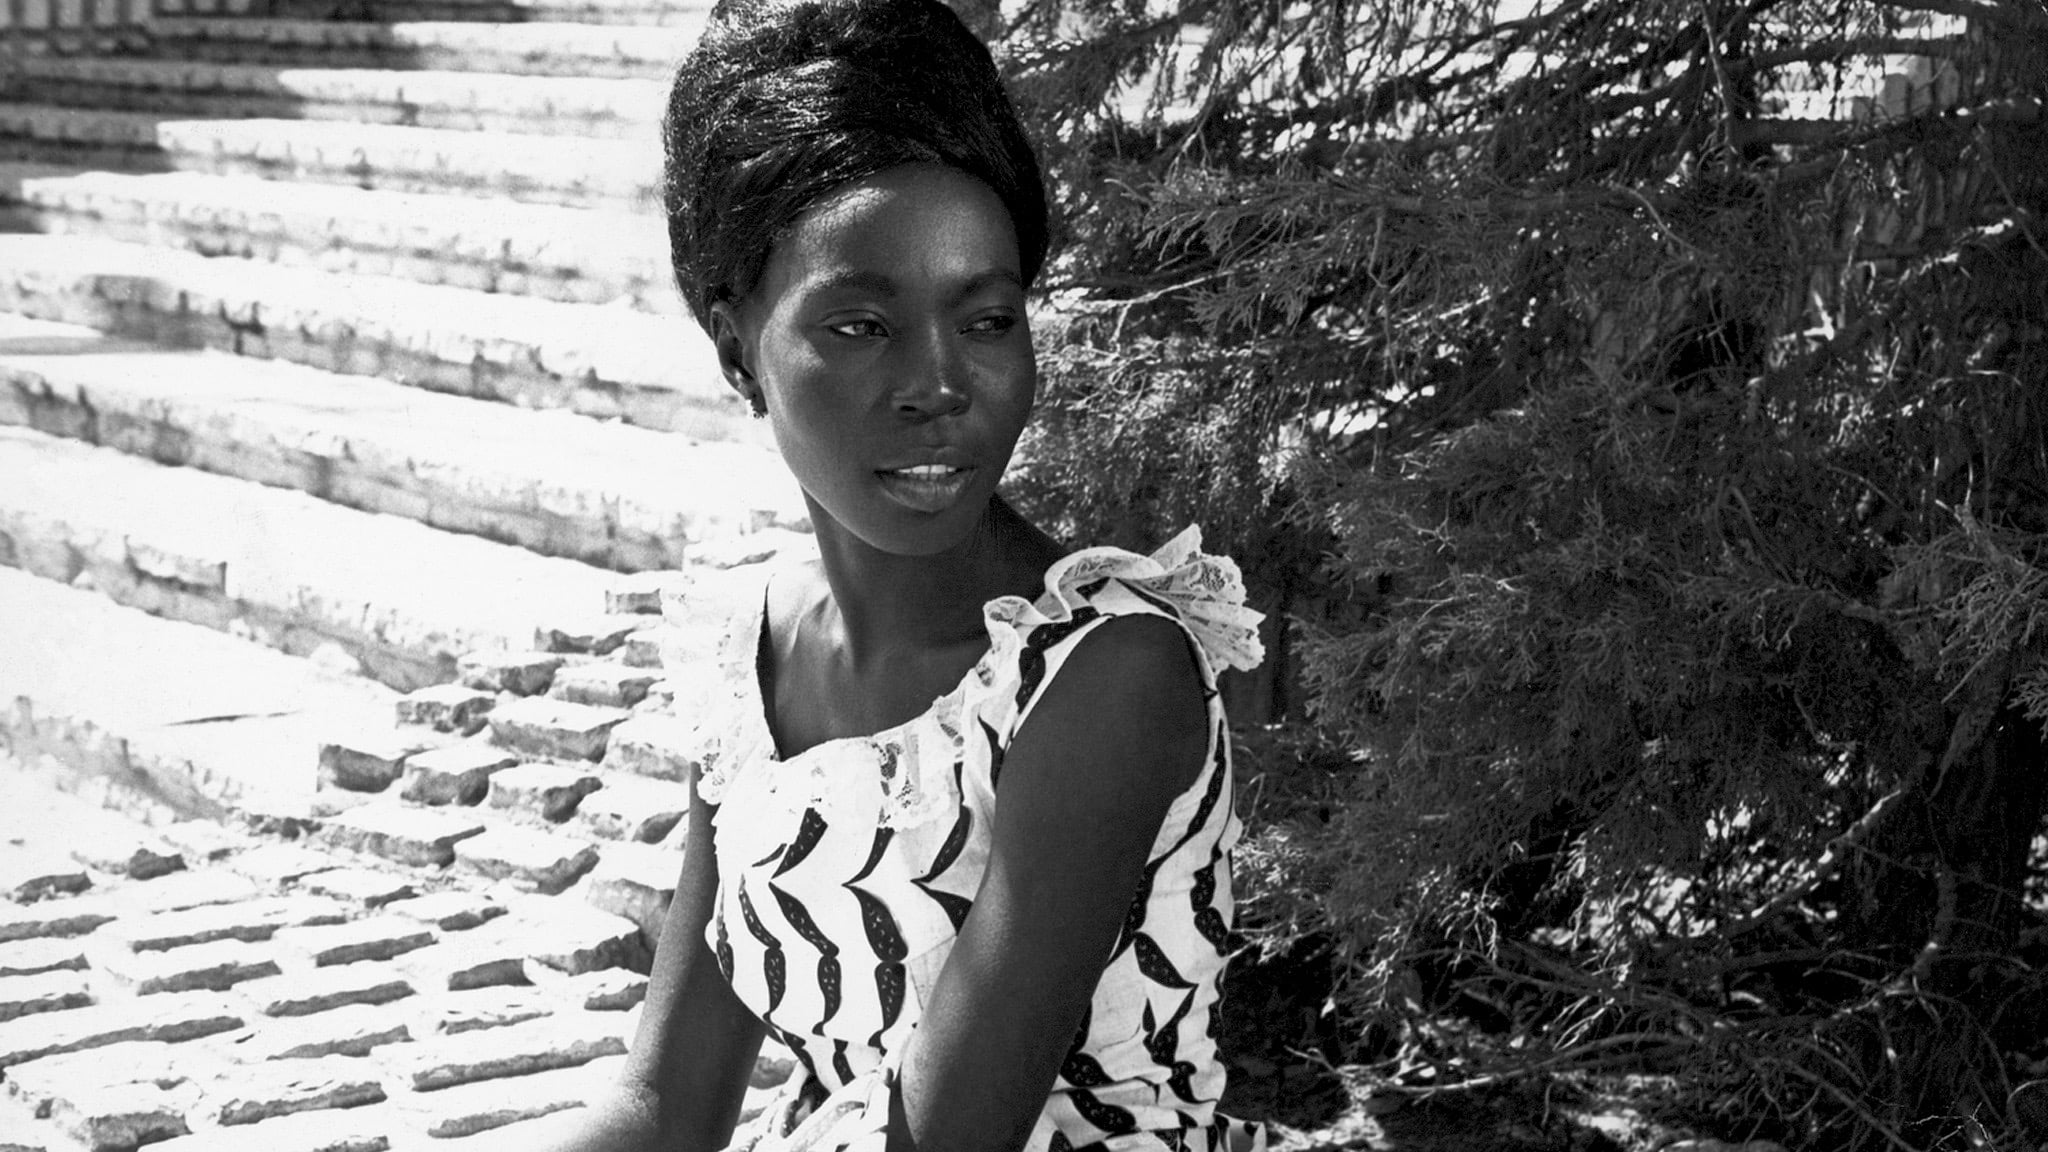 Black Girl 1966 123movies